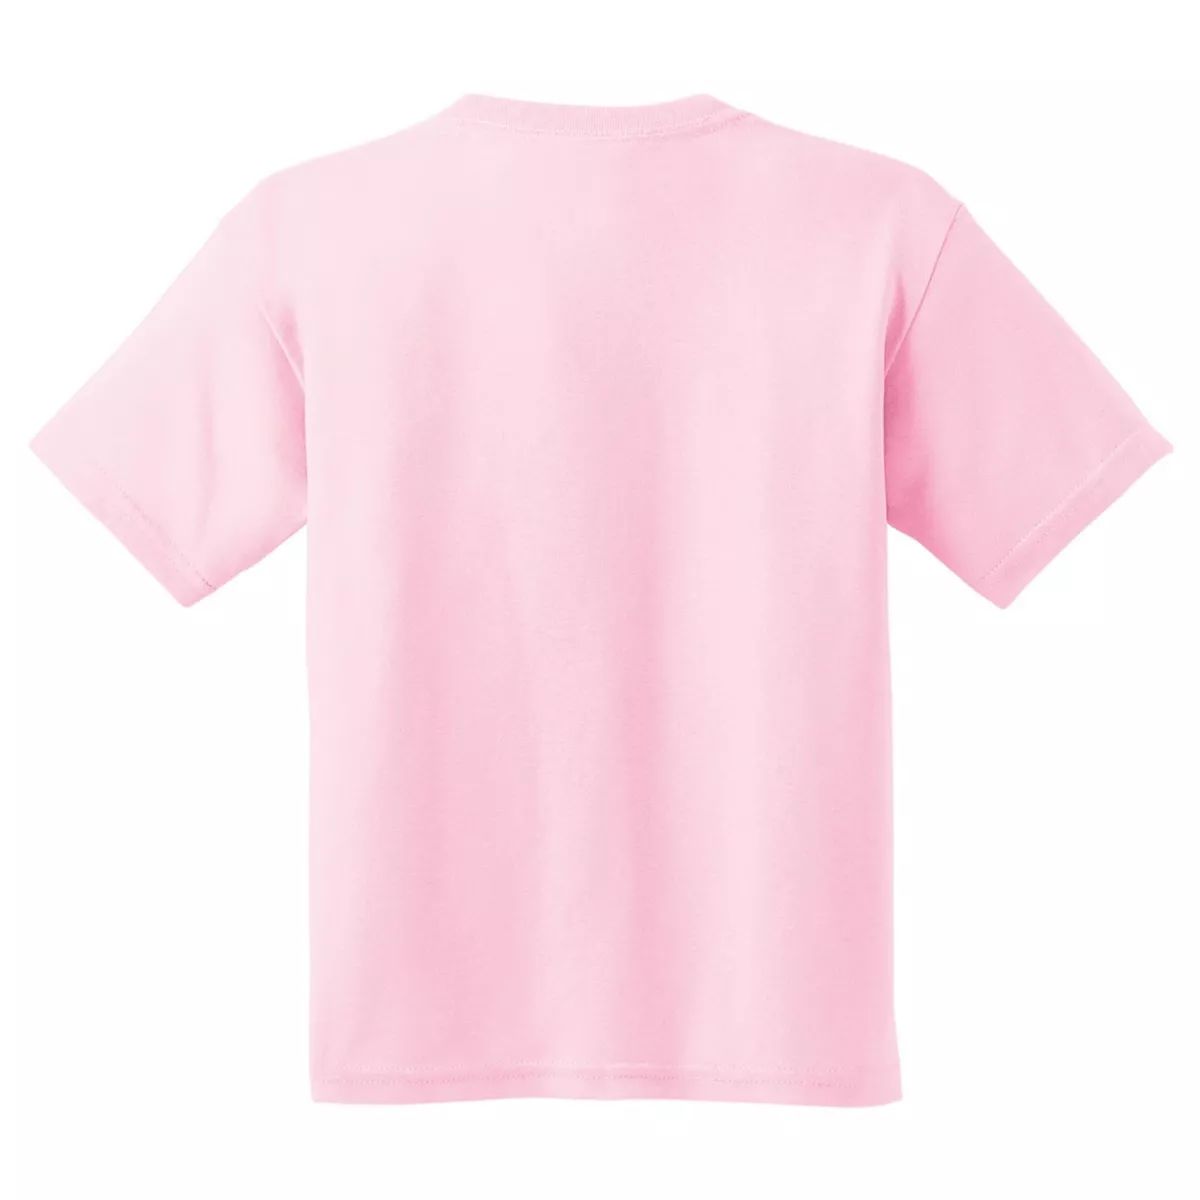 Молодежная футболка Gildan из плотного хлопка унисекс Floso, светло-розовый